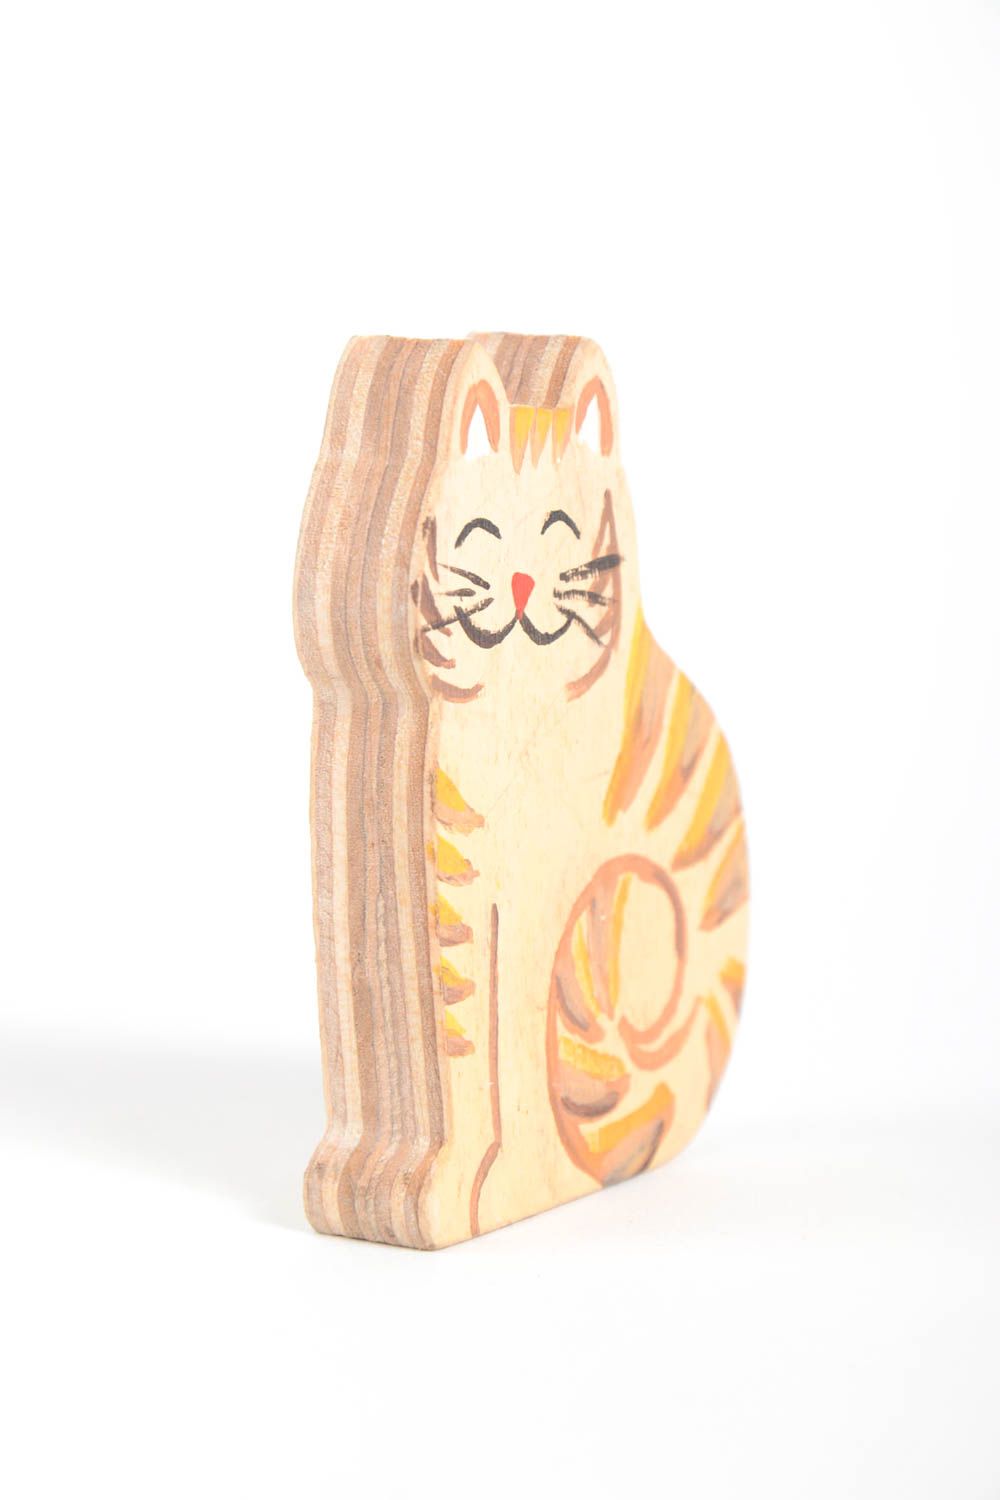 Фигурка ручной работы фигурка из фанеры фигурка животного кот рыжий расписной фото 5